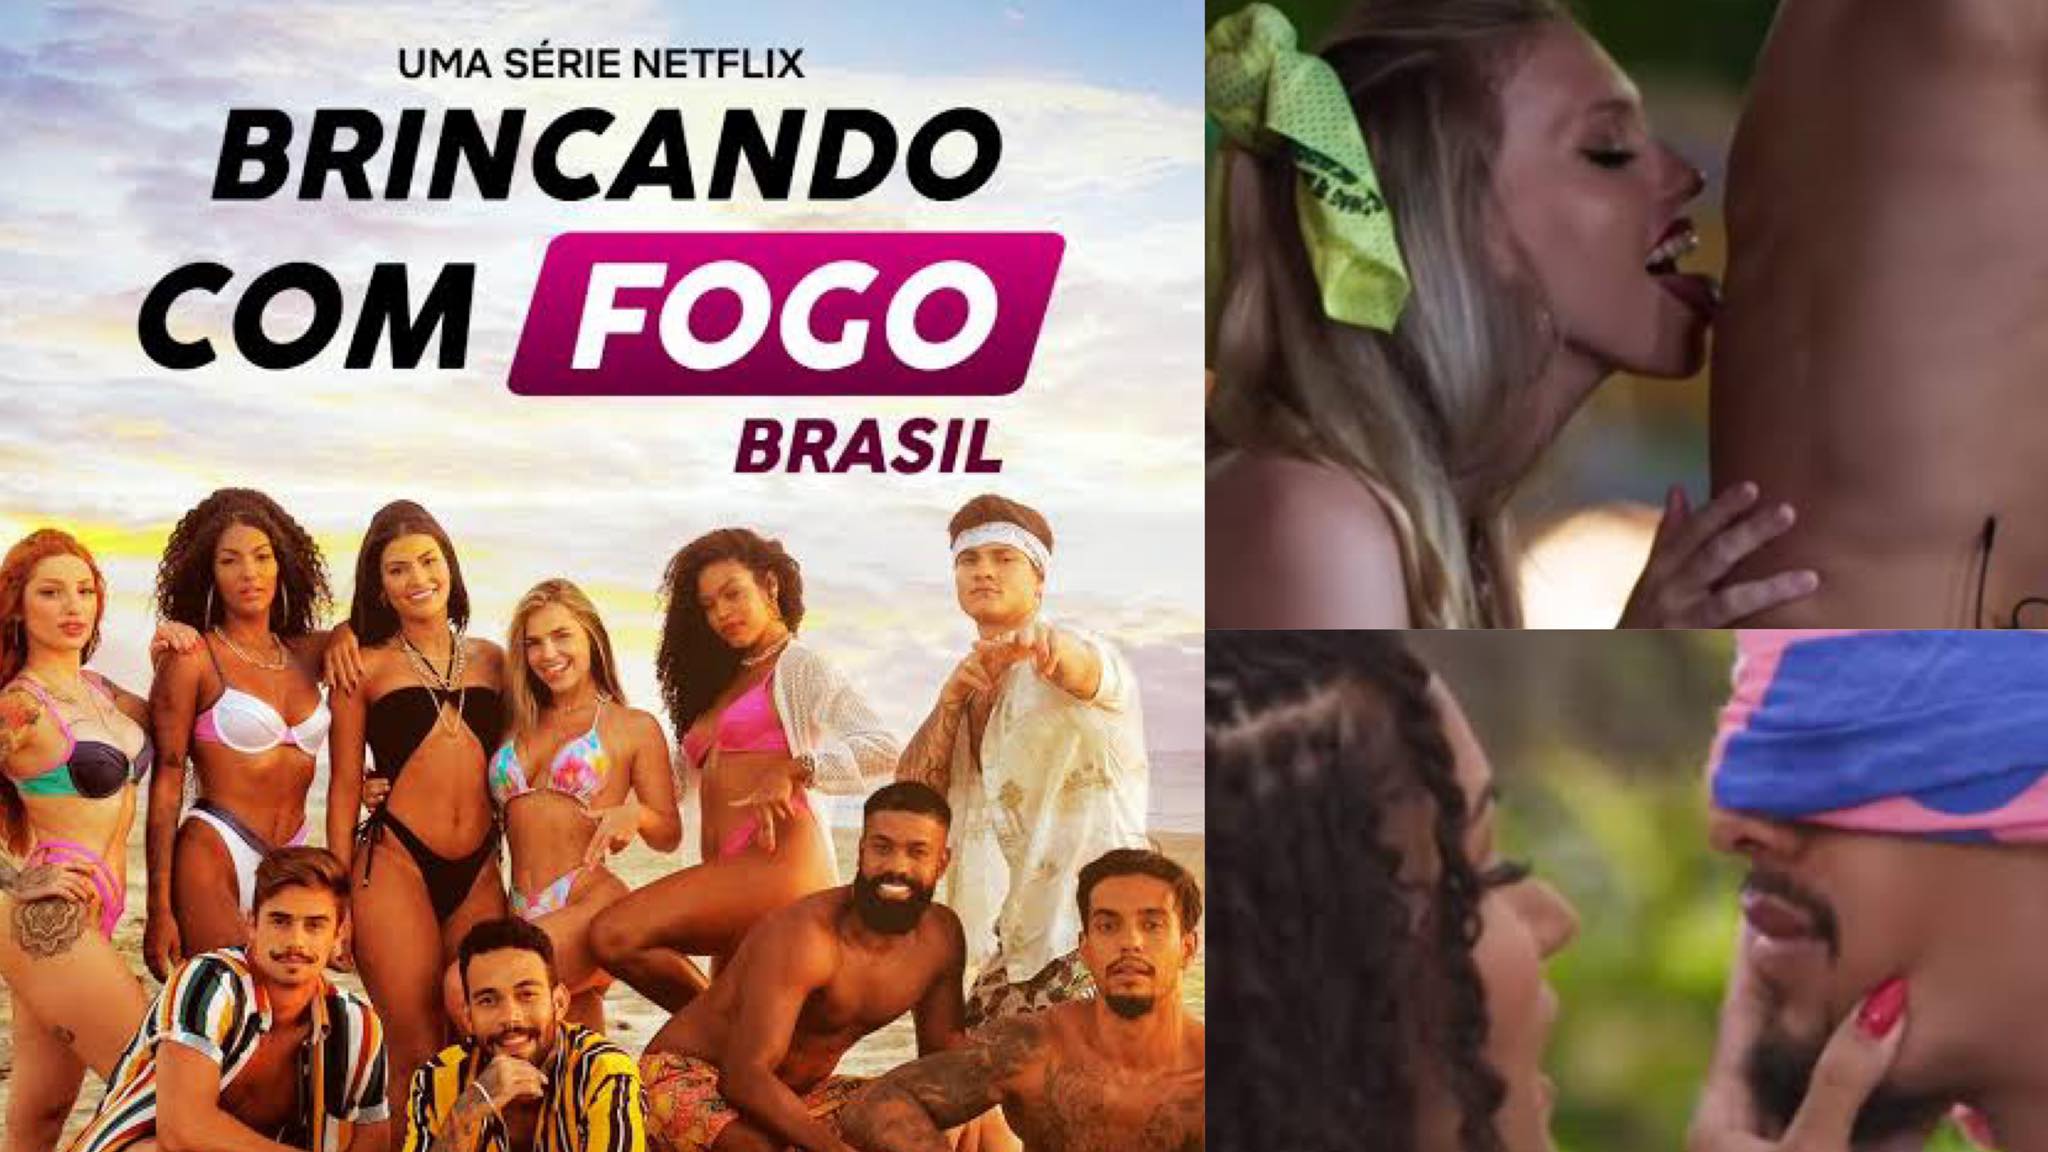 Brincando com Fogo Brasil: Netflix lança versão brasileira de reality que pune os “assanhados”